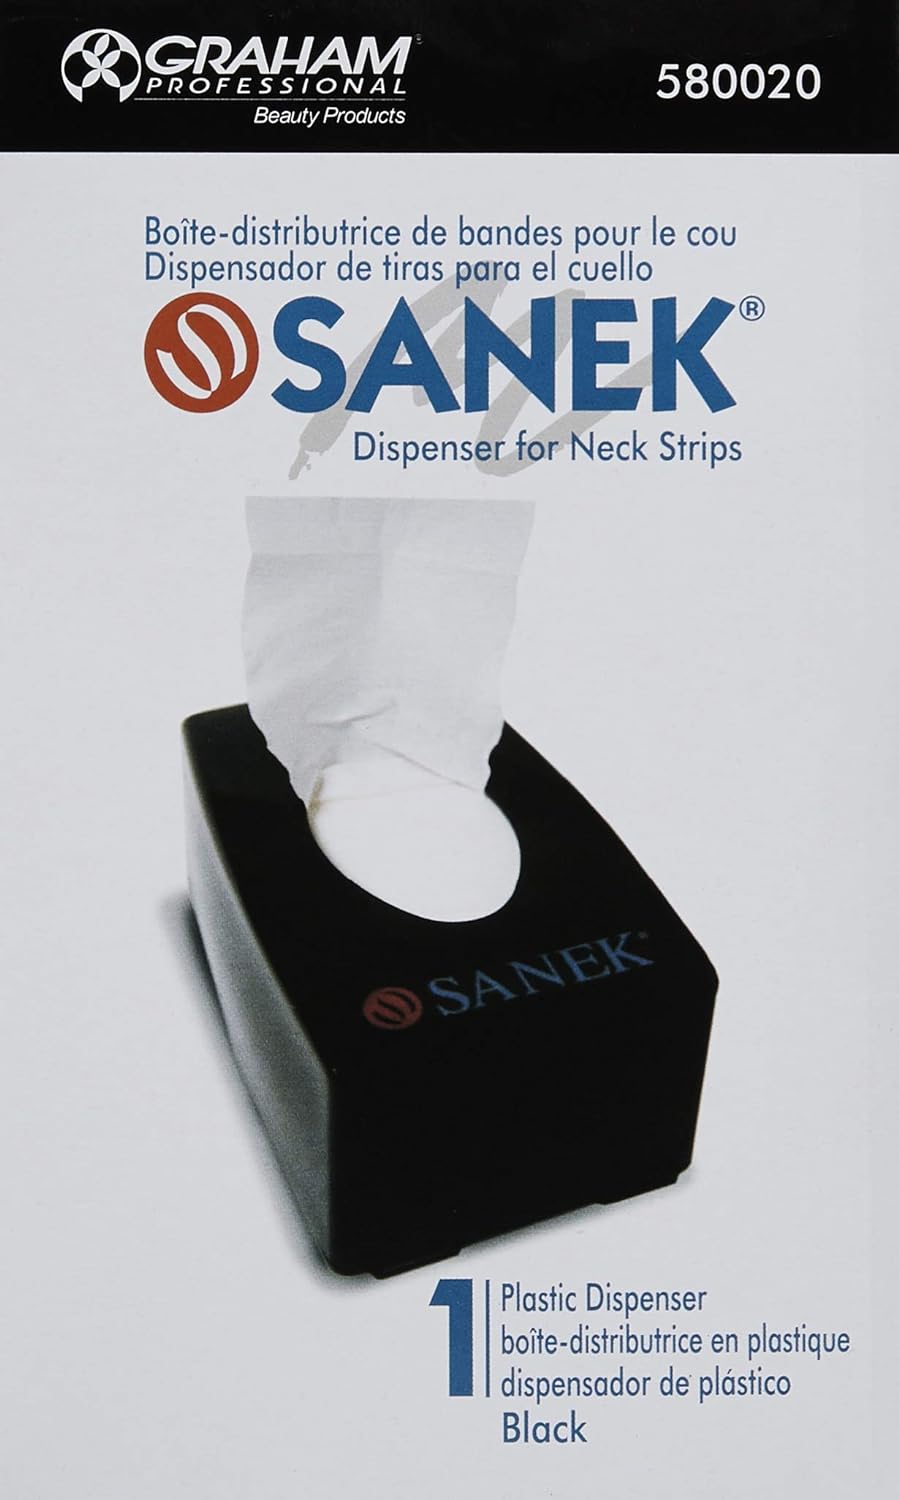 Load image into Gallery viewer, Graham Sanek Neck Strip Dispenser (Black)
